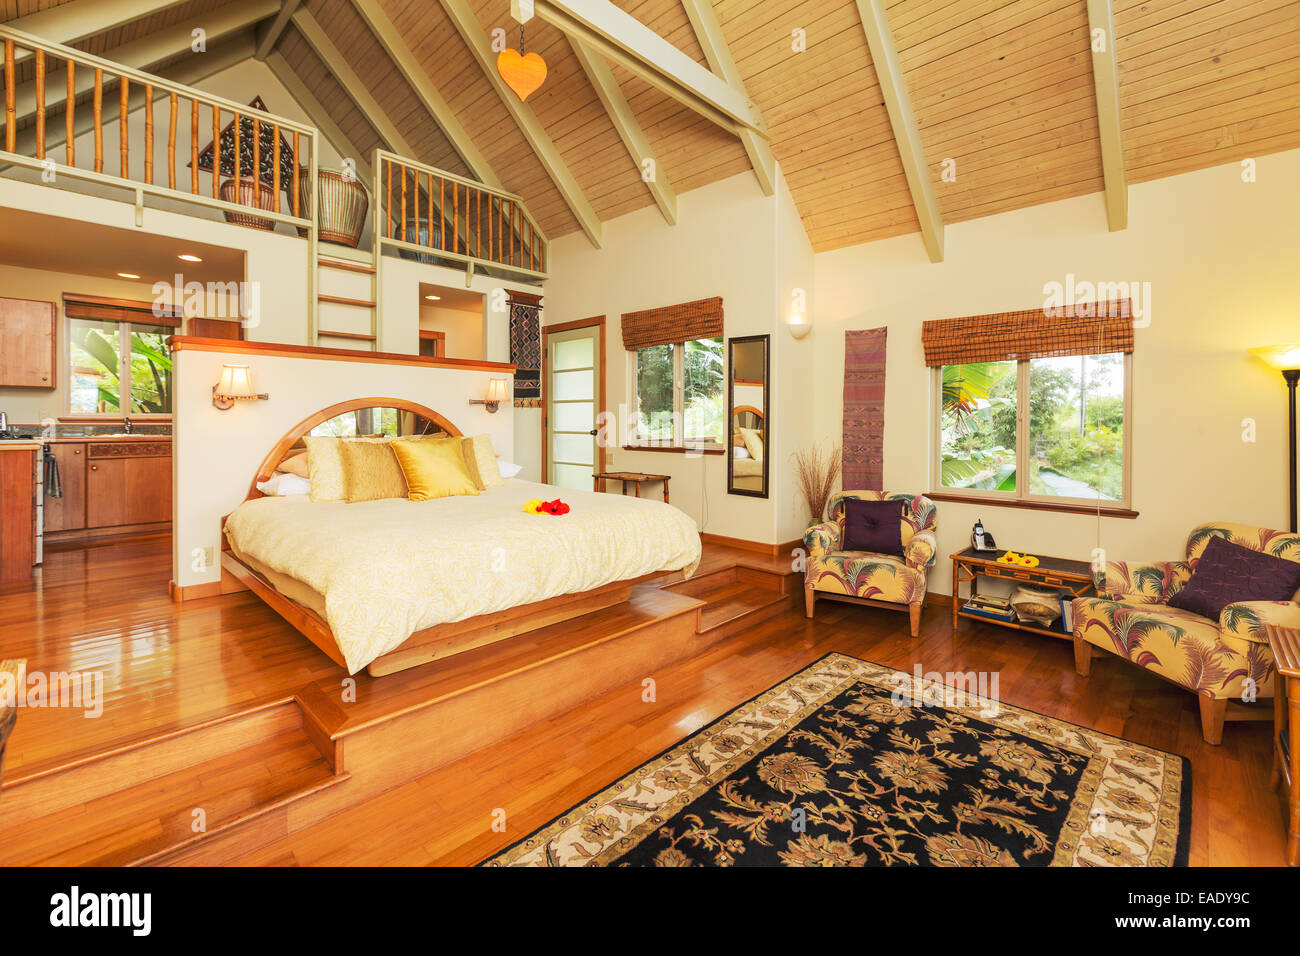 Romantic Cozy Bedroom with Hardwood Floors. Home Interior Design Stock Photo